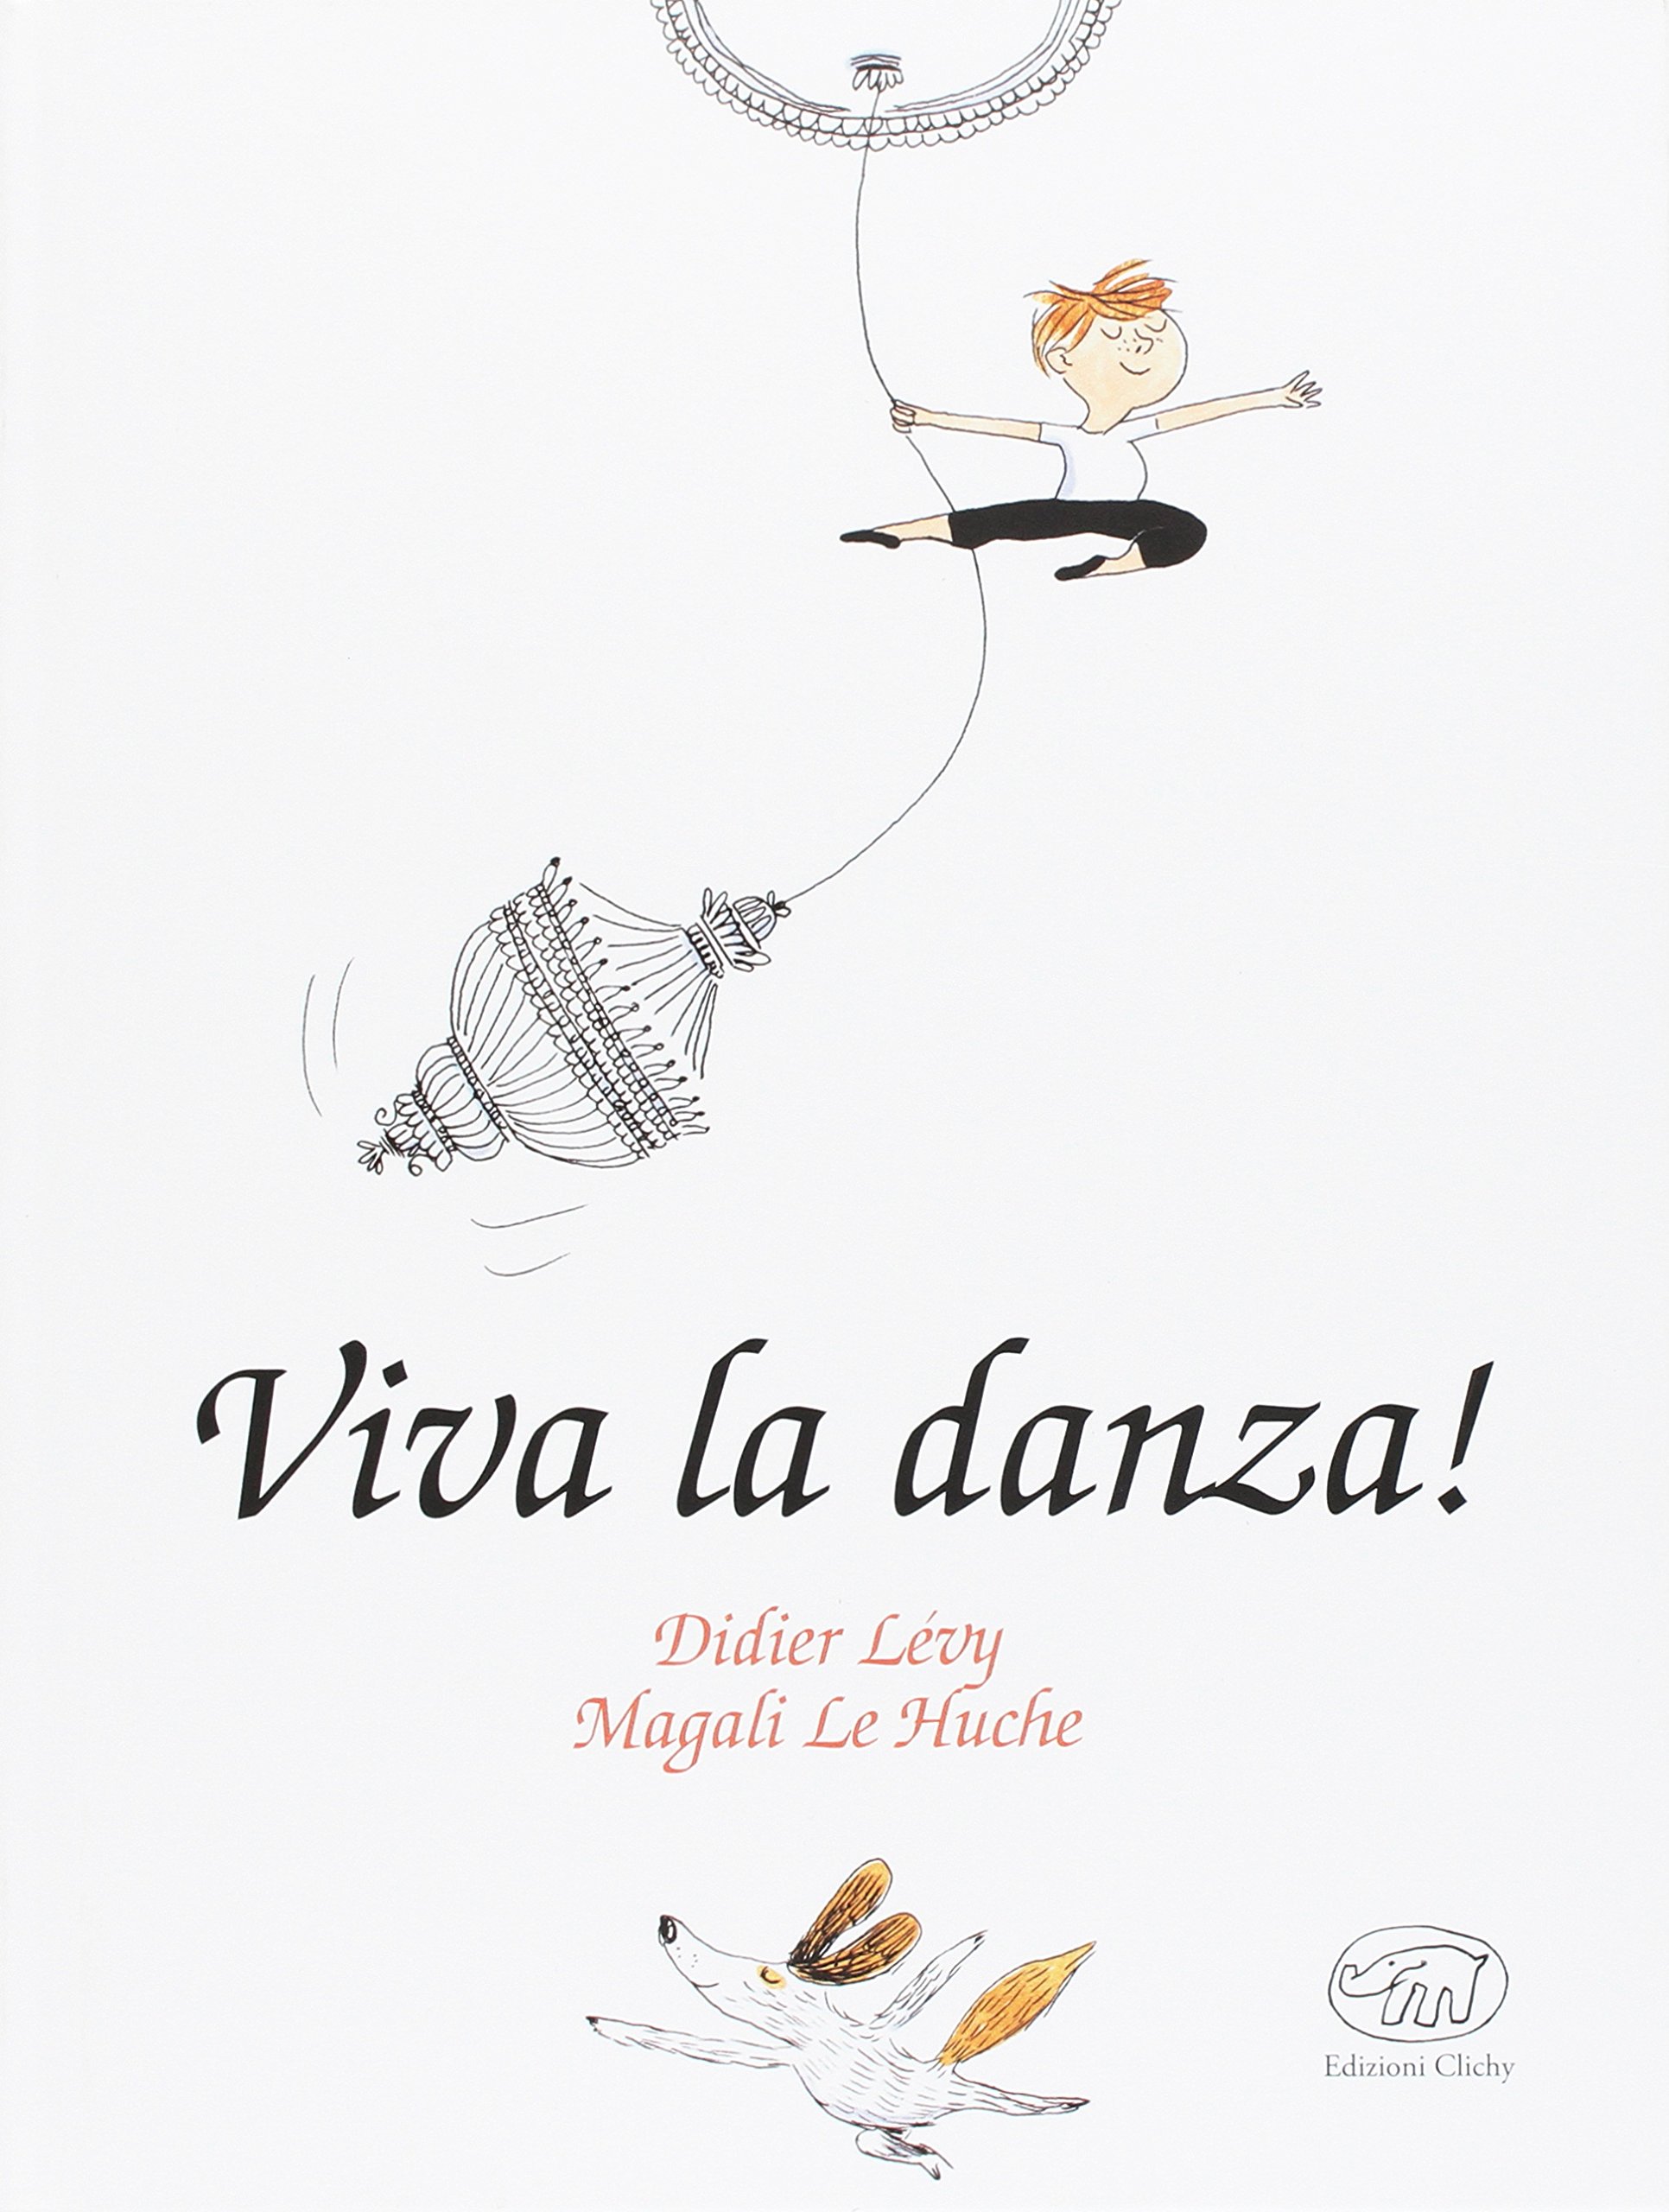 Viva la danza, Didier Lévy, Magali Le Huche, Edizioni Clichy